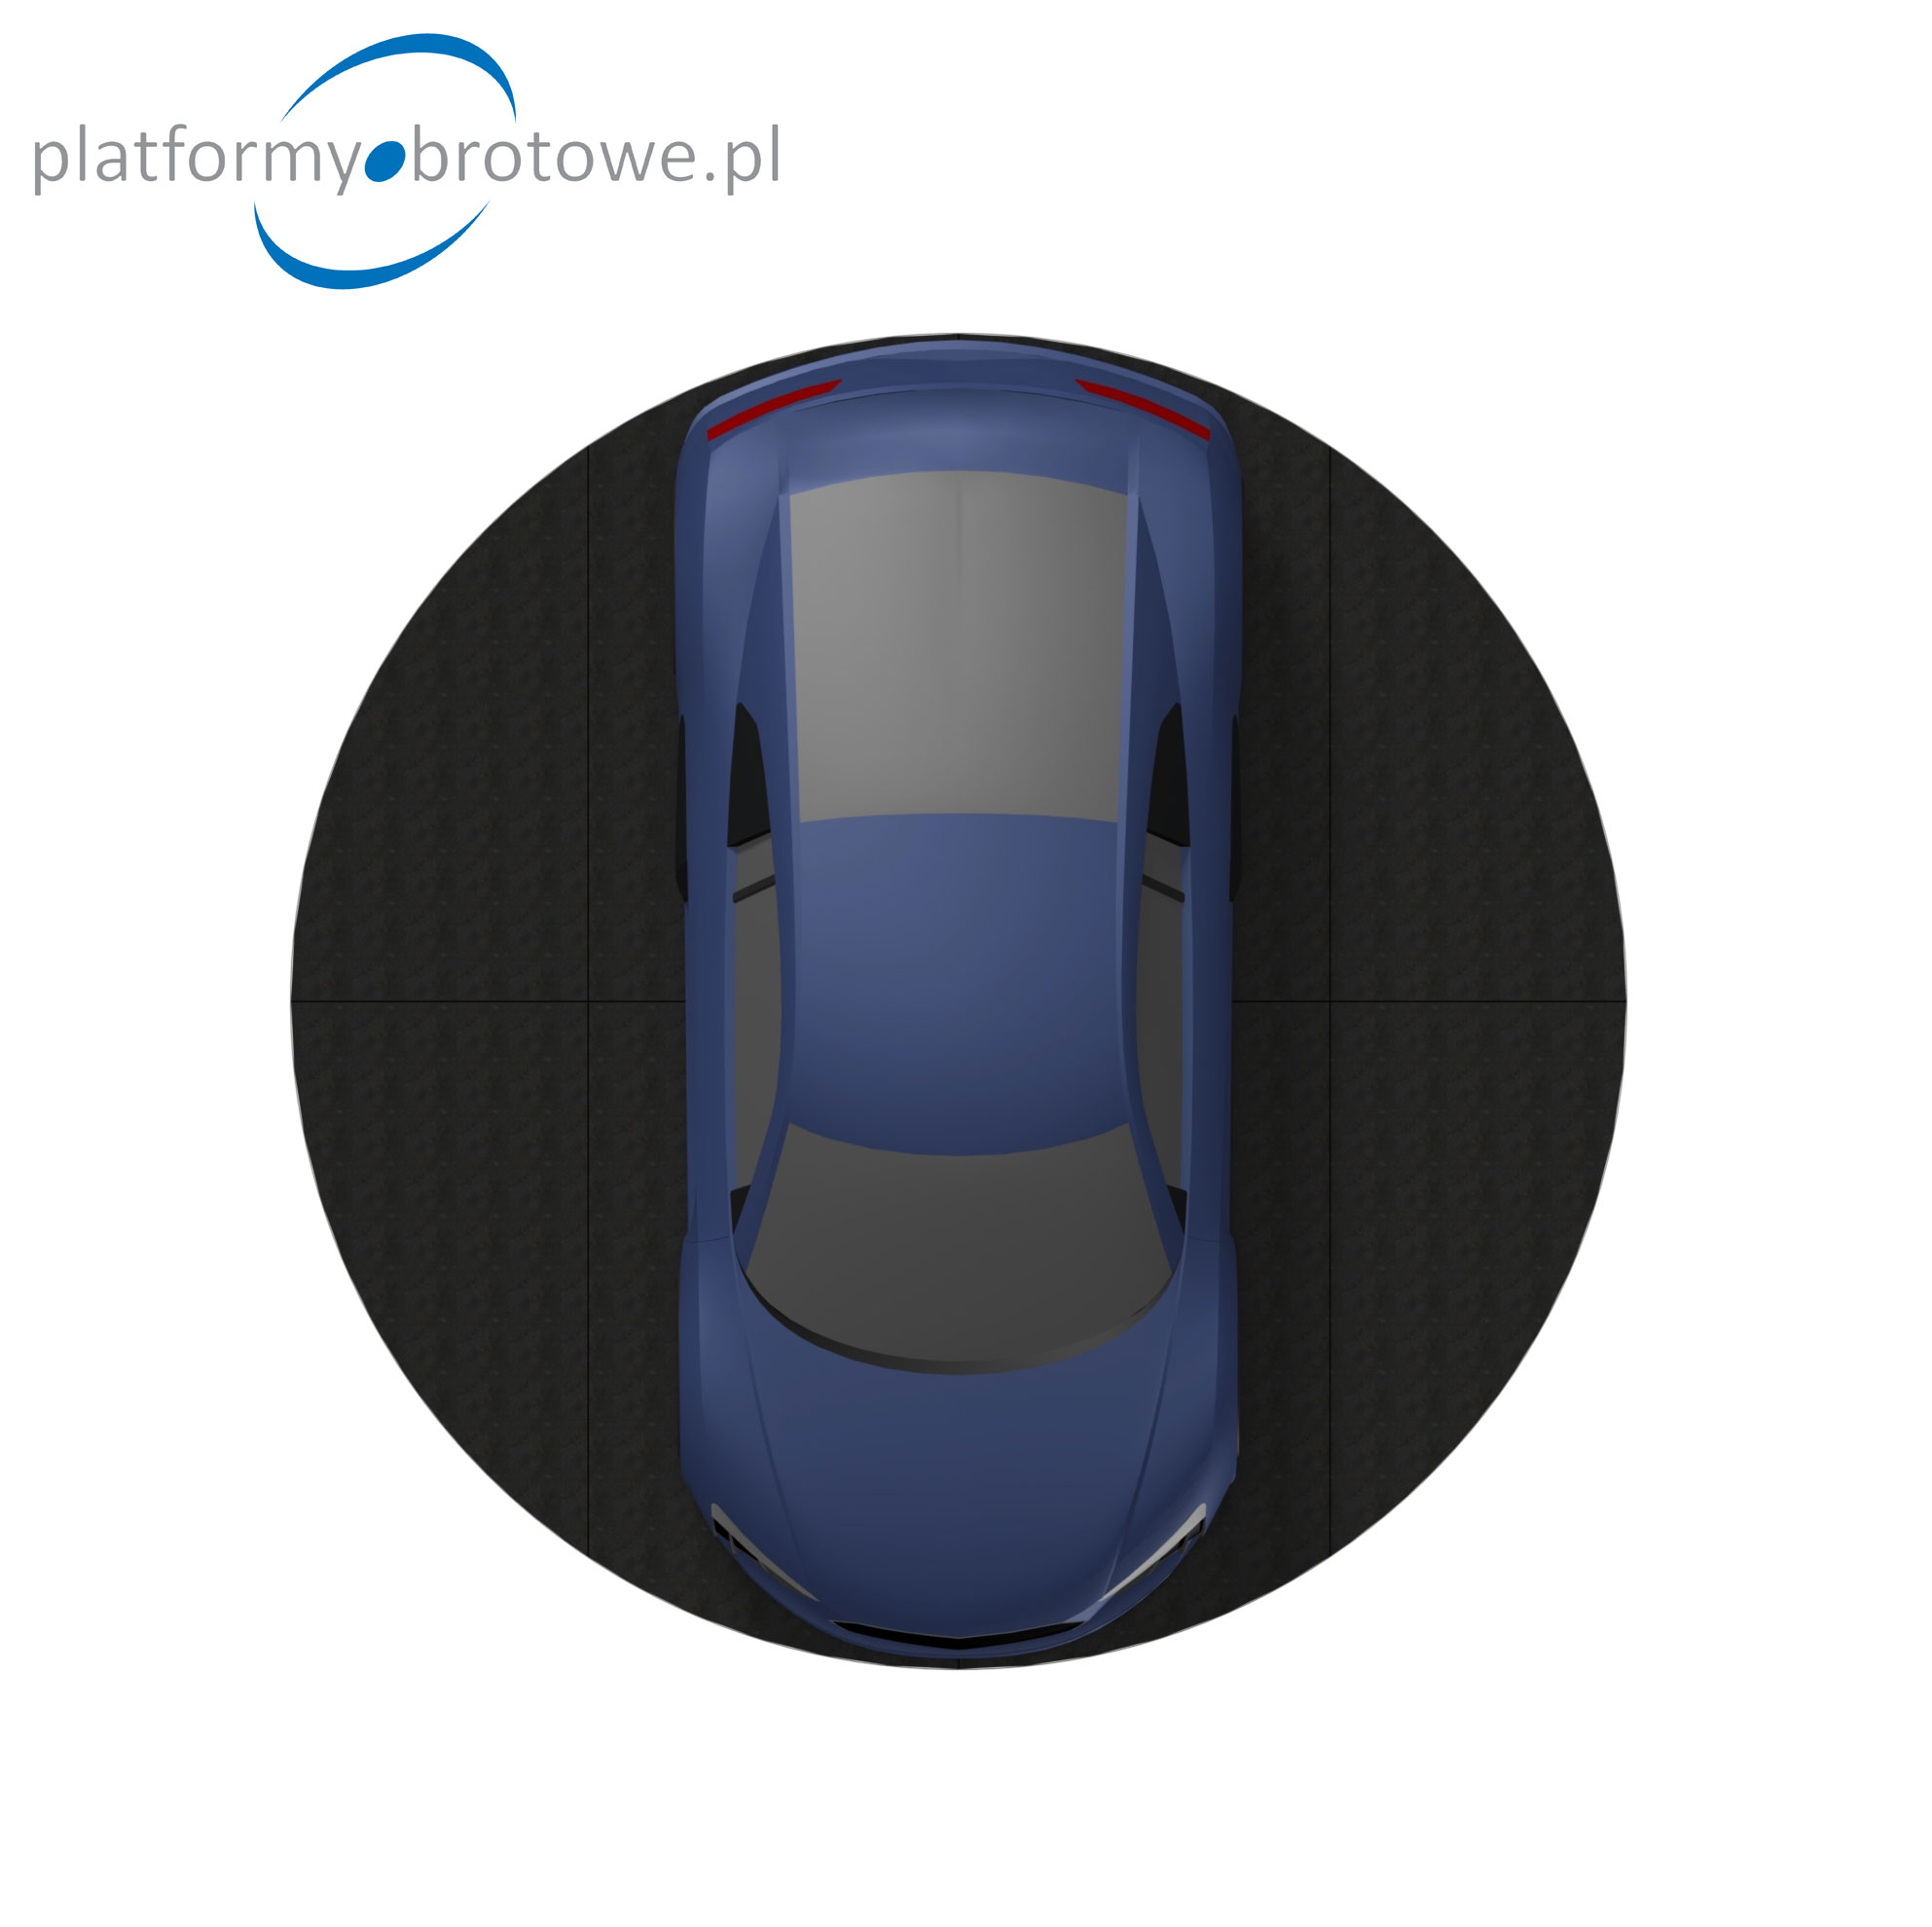 samochodowa platforma obrotowa do fotografii 360, obrotnica samochodowa, platforma do obracania aut